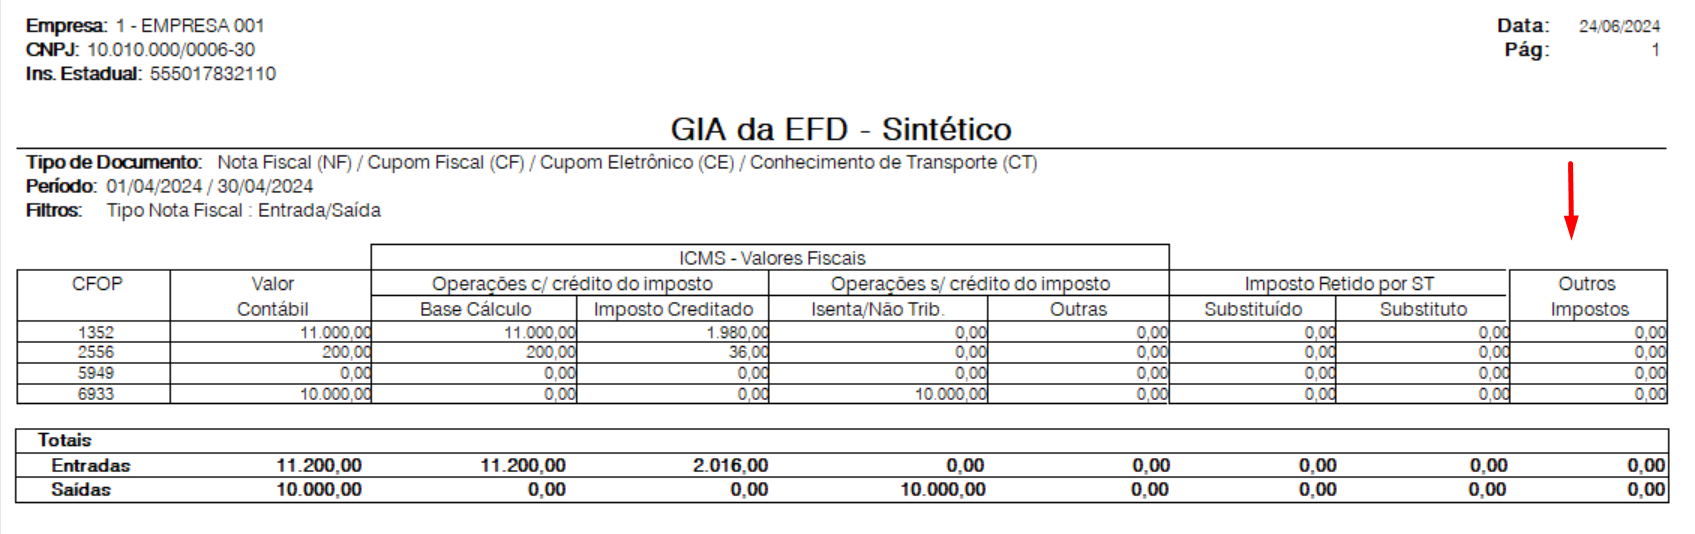 Imagem 02 - Relatório da GIA EFD coluna Outros Impostos